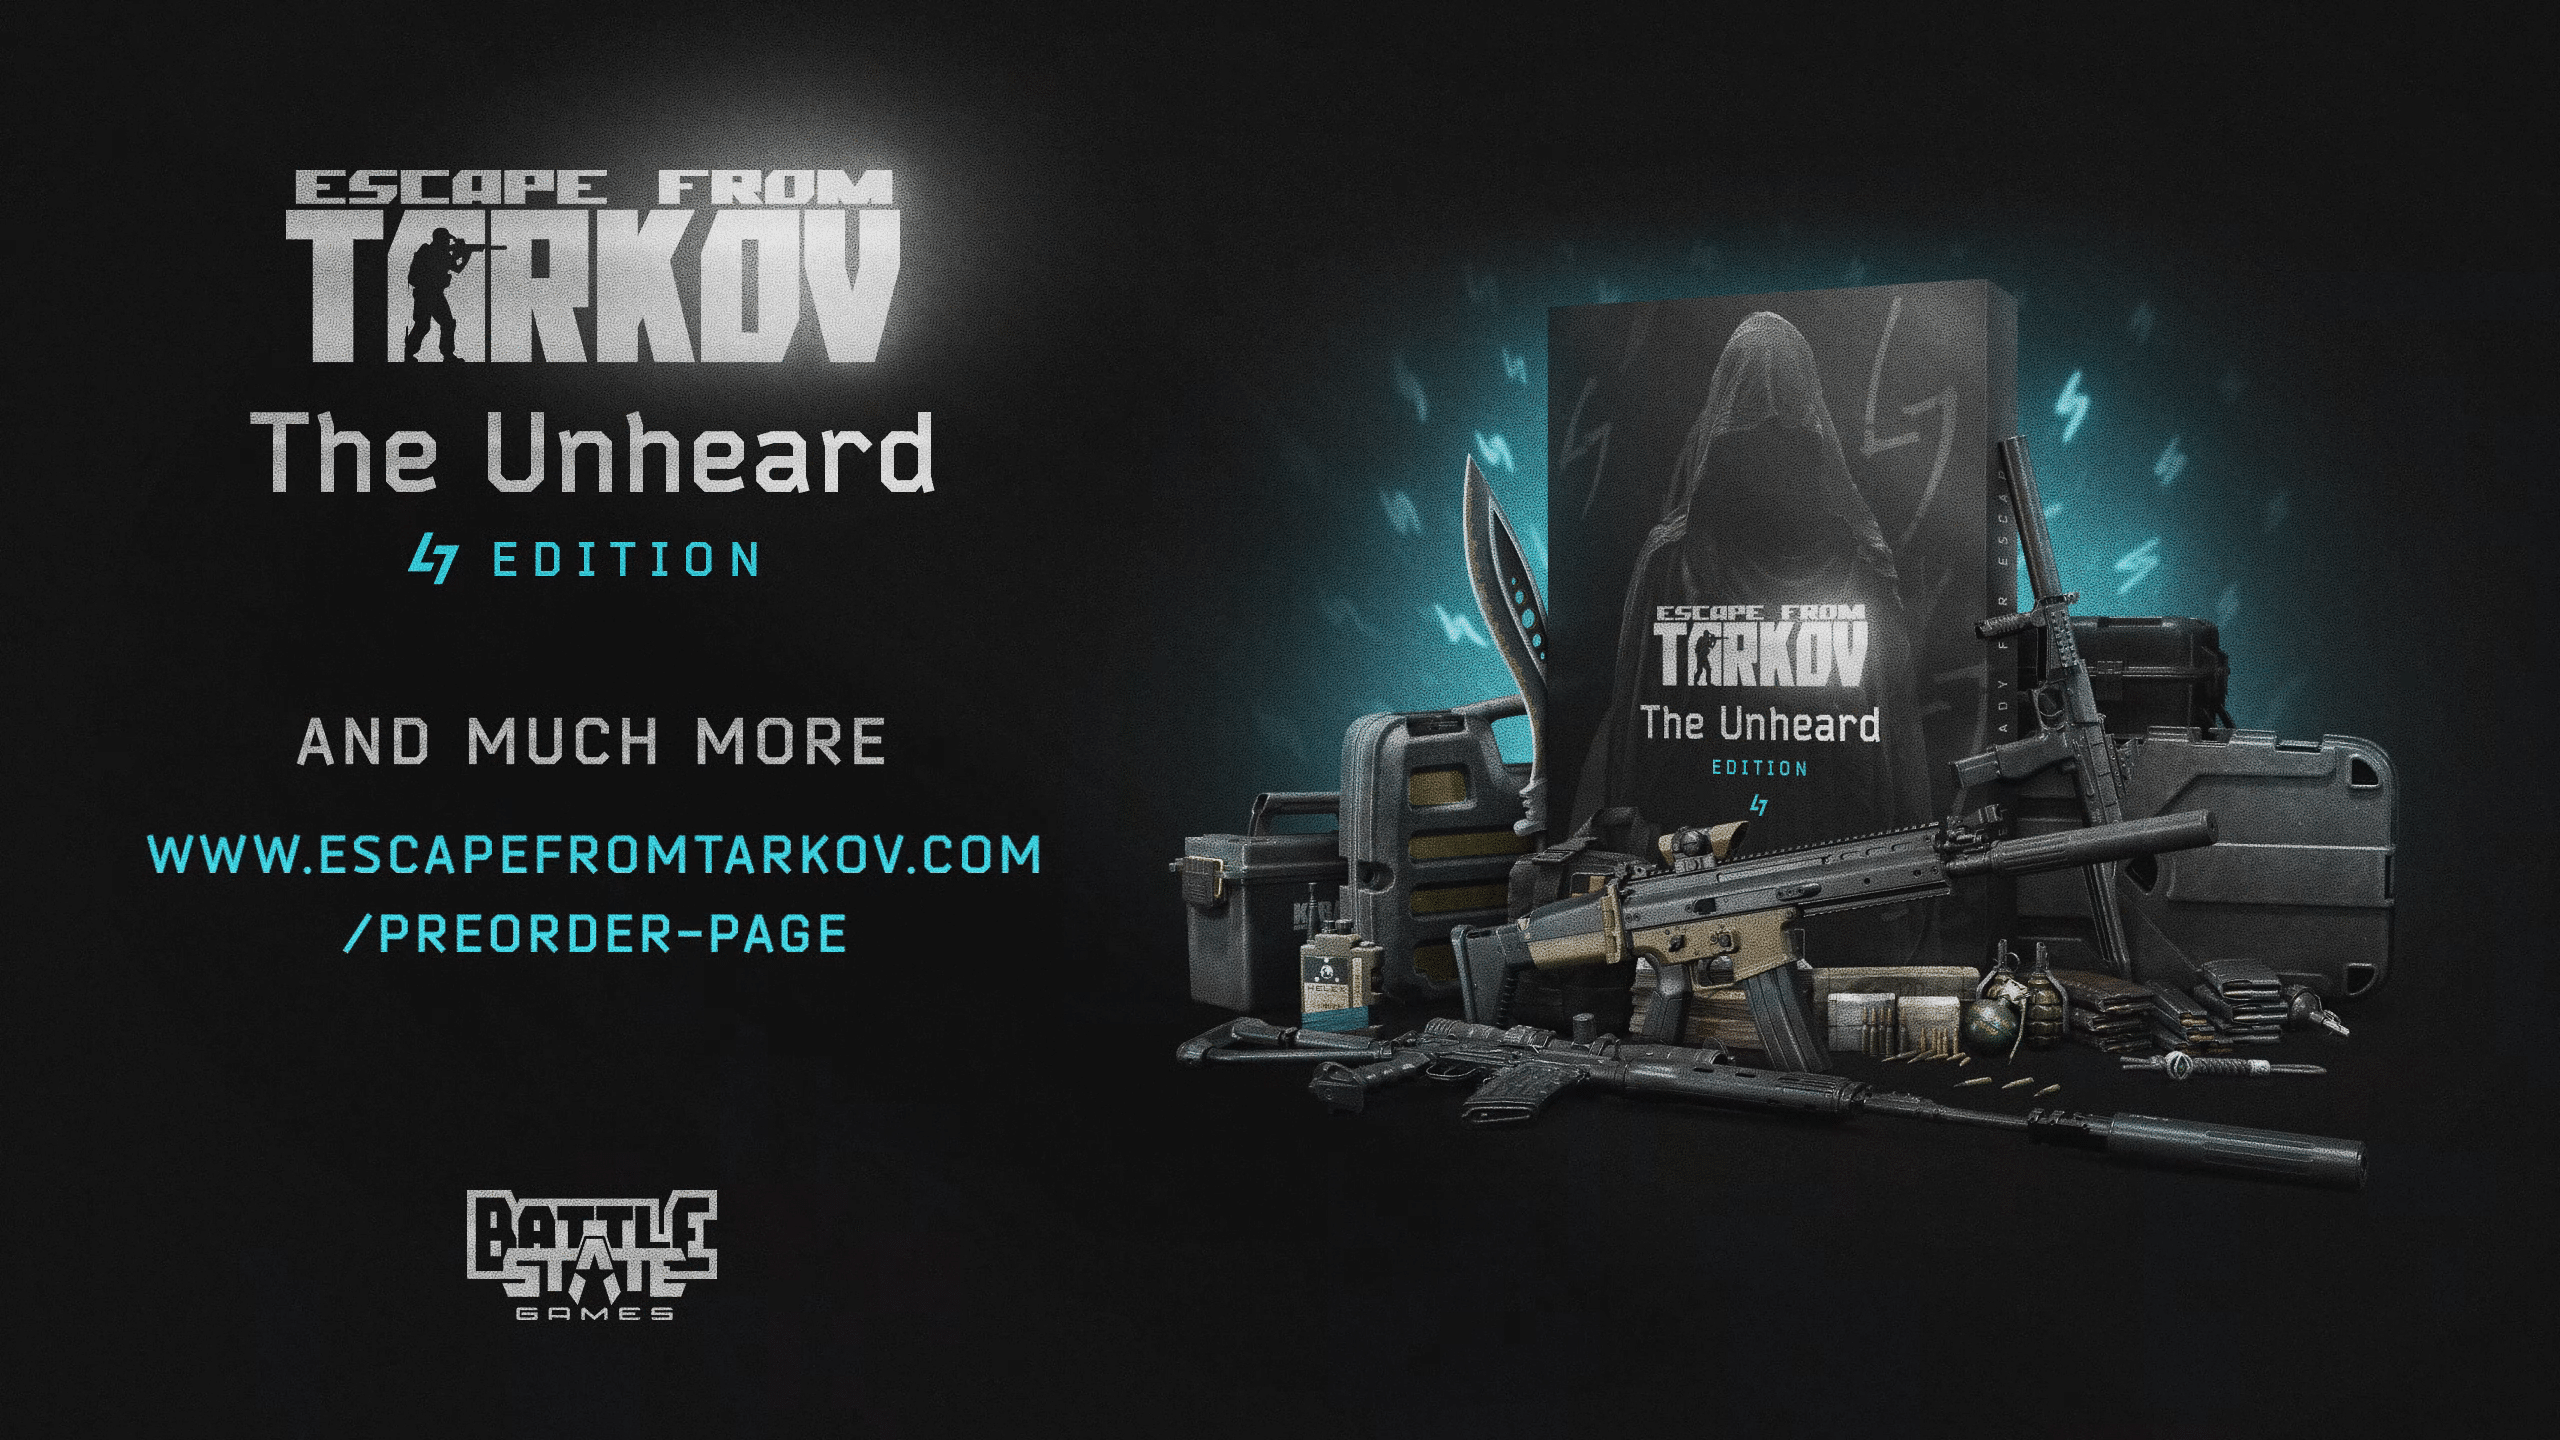 Издание Escape from Tarkov Unheard Edition отказывается от обещанного контента за цену в 250 долларов, что вызвало возмущение сообщества